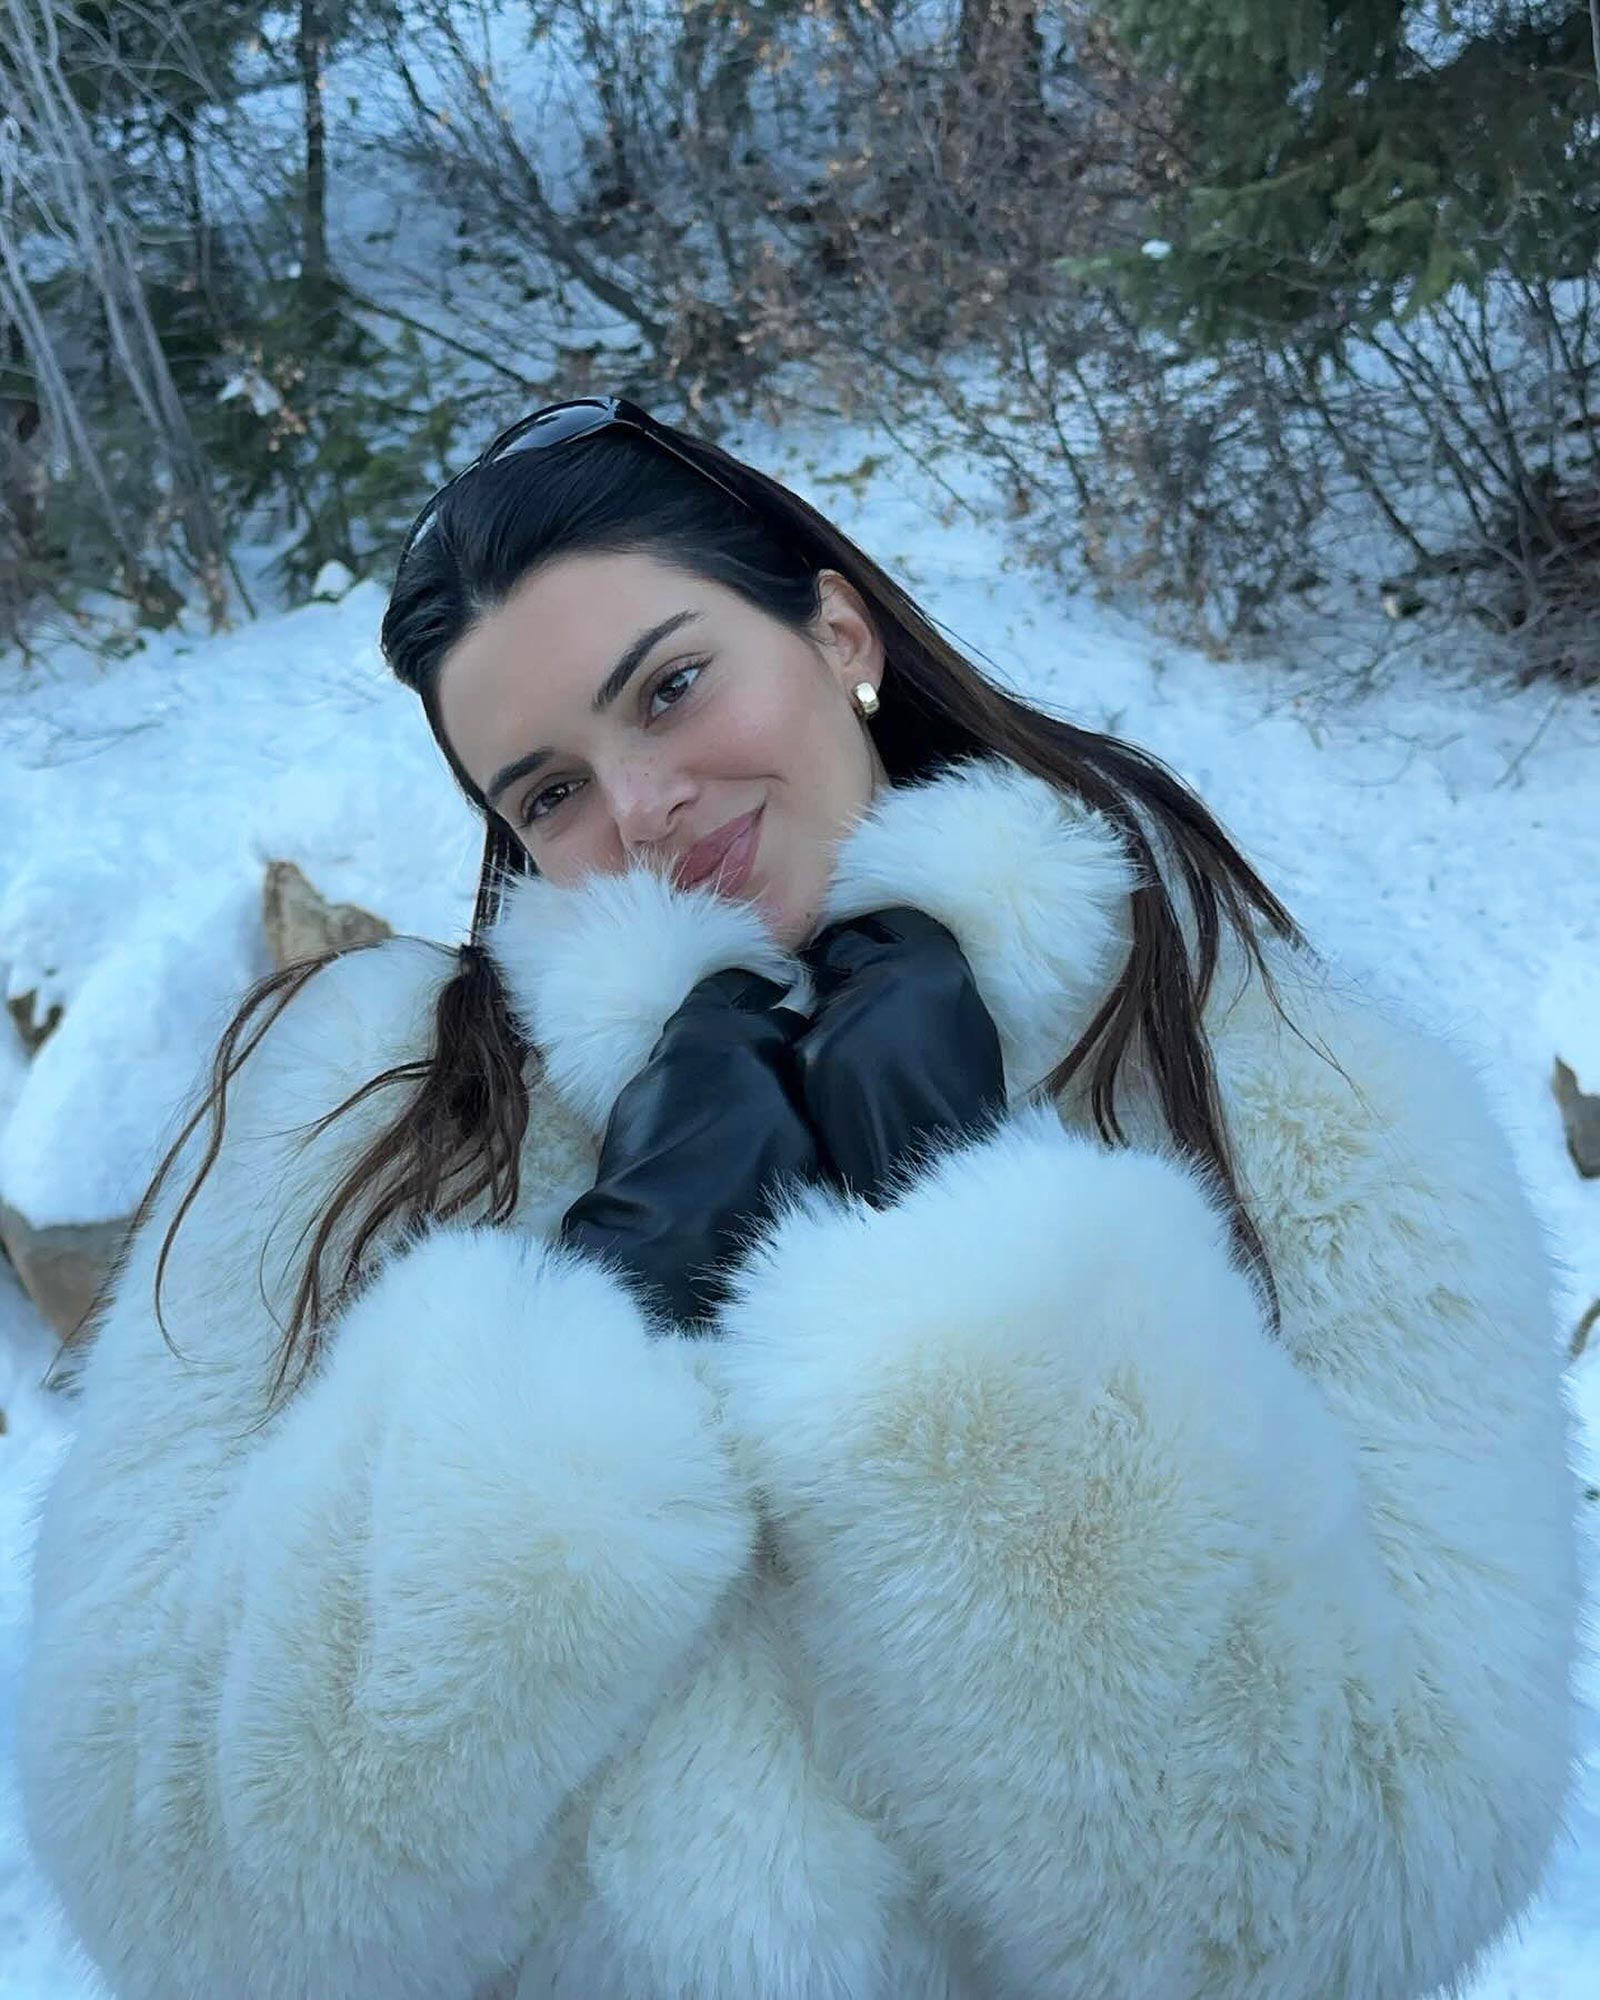 KendallJenner via Instagram! ❄️ #KendallJenner wears the @Alo 'Opulent Faux  Fur Cropped Jacket' in Ivory ($348) and the @MegaJ